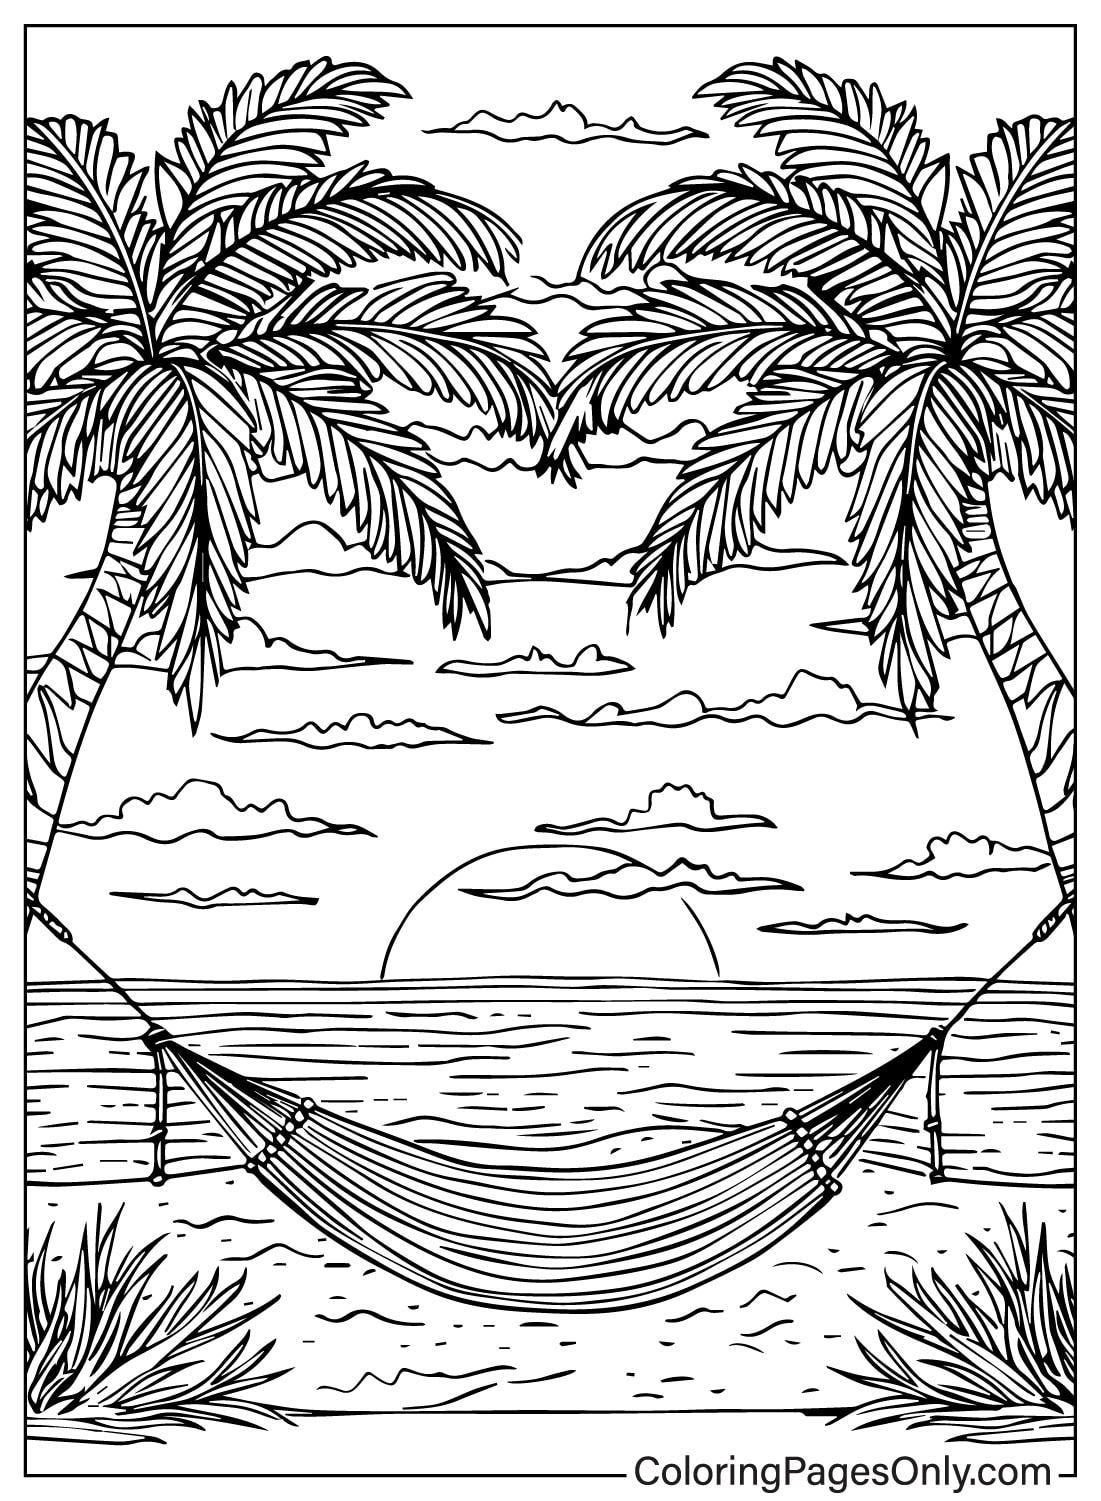 Dibujo de una hamaca entre dos palmeras.